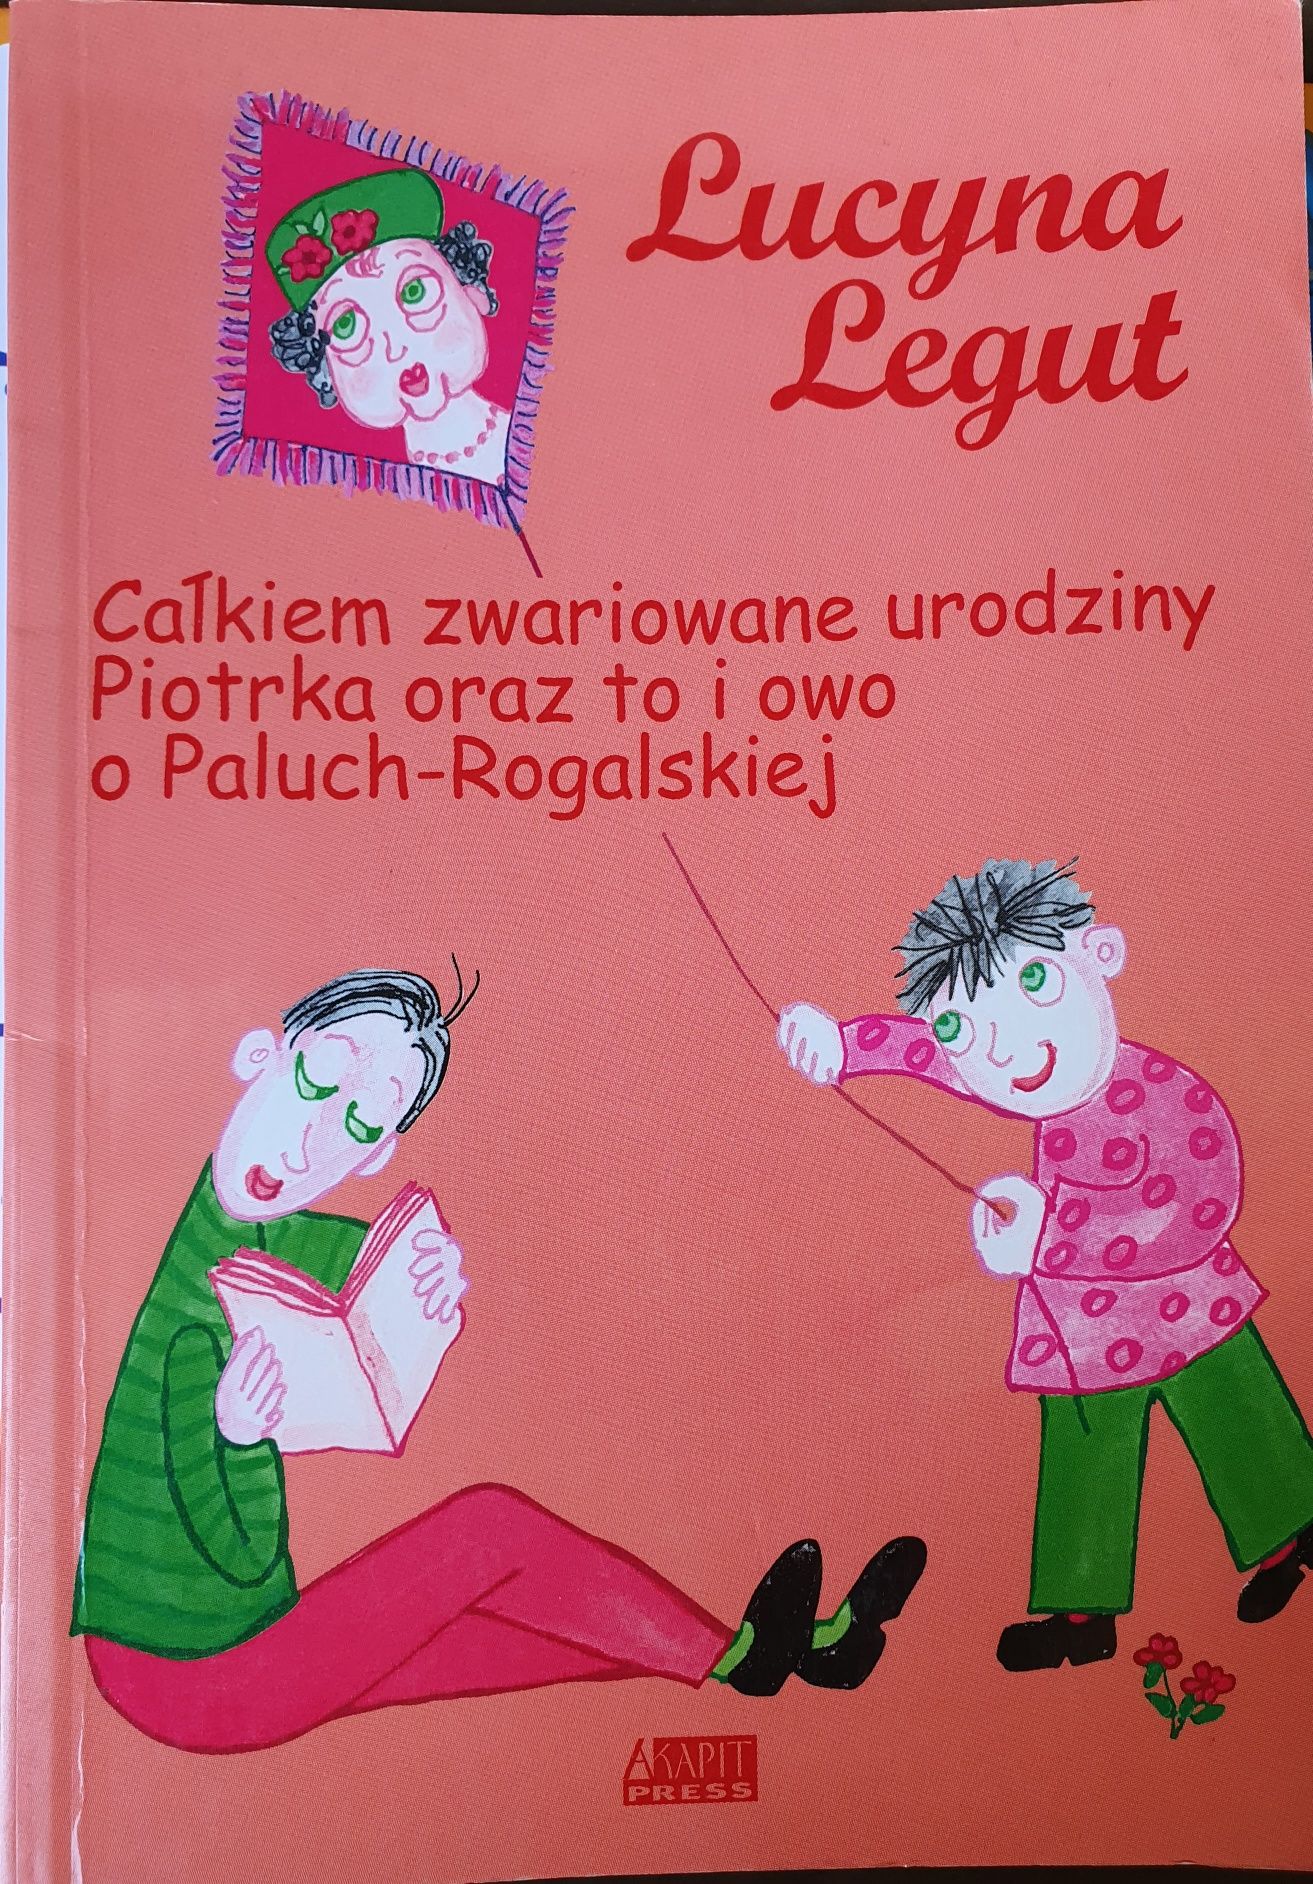 Całkiem zwariowane urodziny Piotrka oraz to i owo Legut akapit Press 2